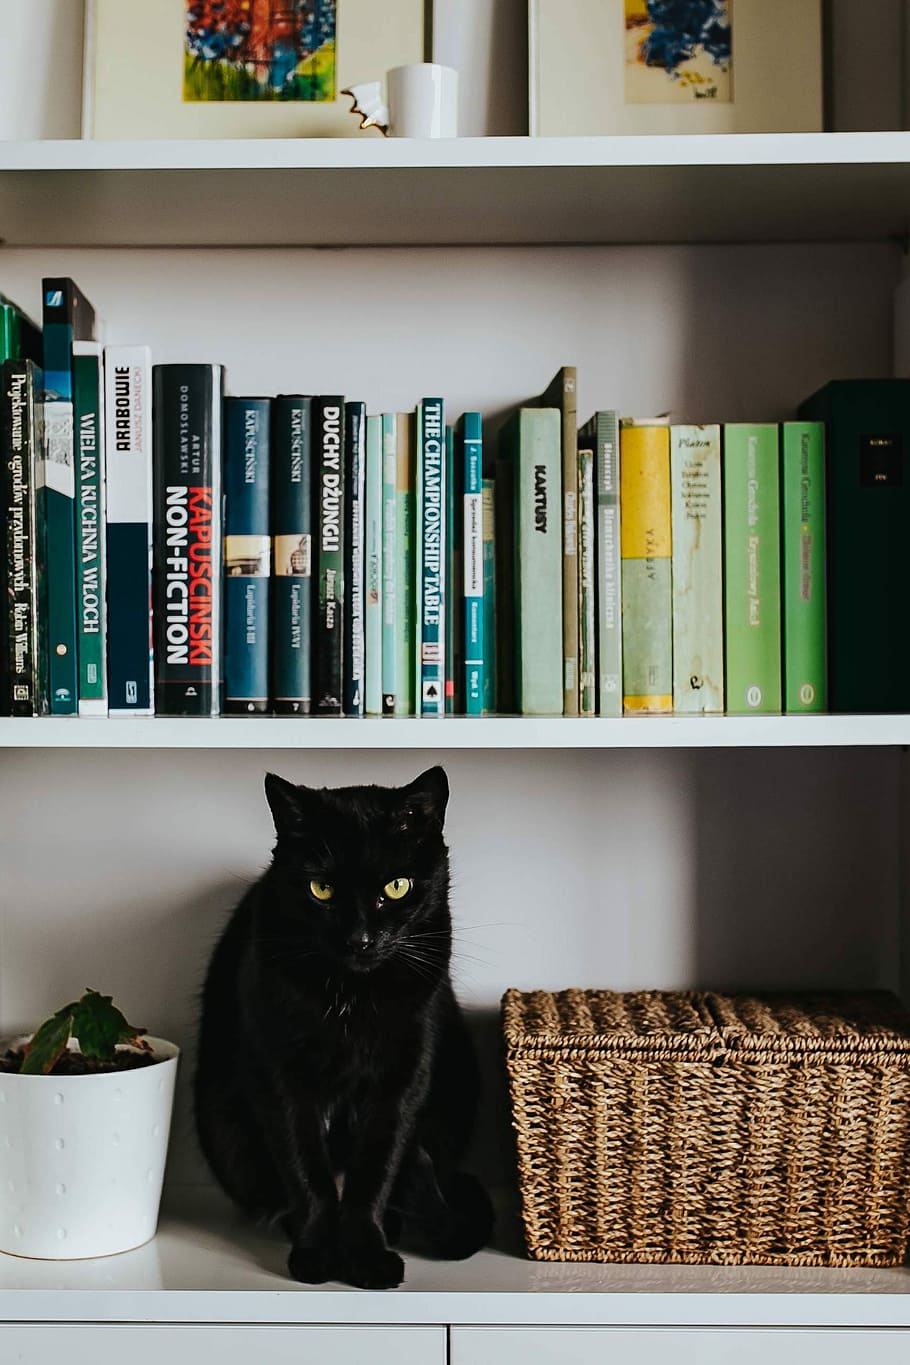 negro, gato, canasta de mimbre, blanco, estantería, gato negro, estante, mascota, animal, libros